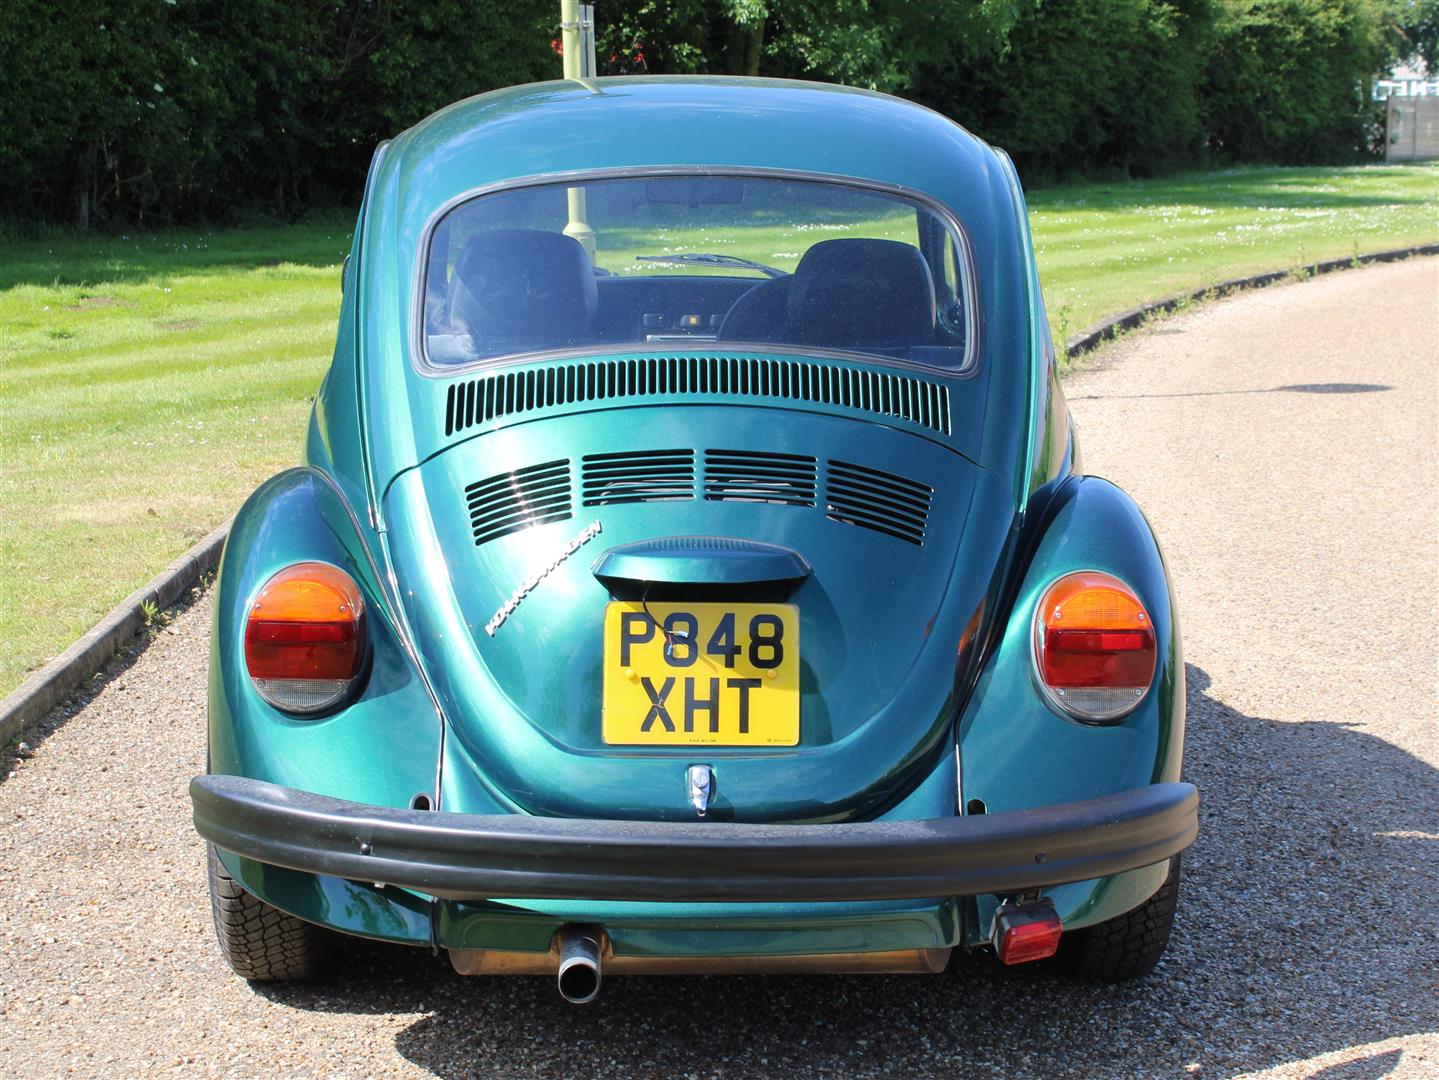 1997 VW Beetle 1600 - Image 6 of 18